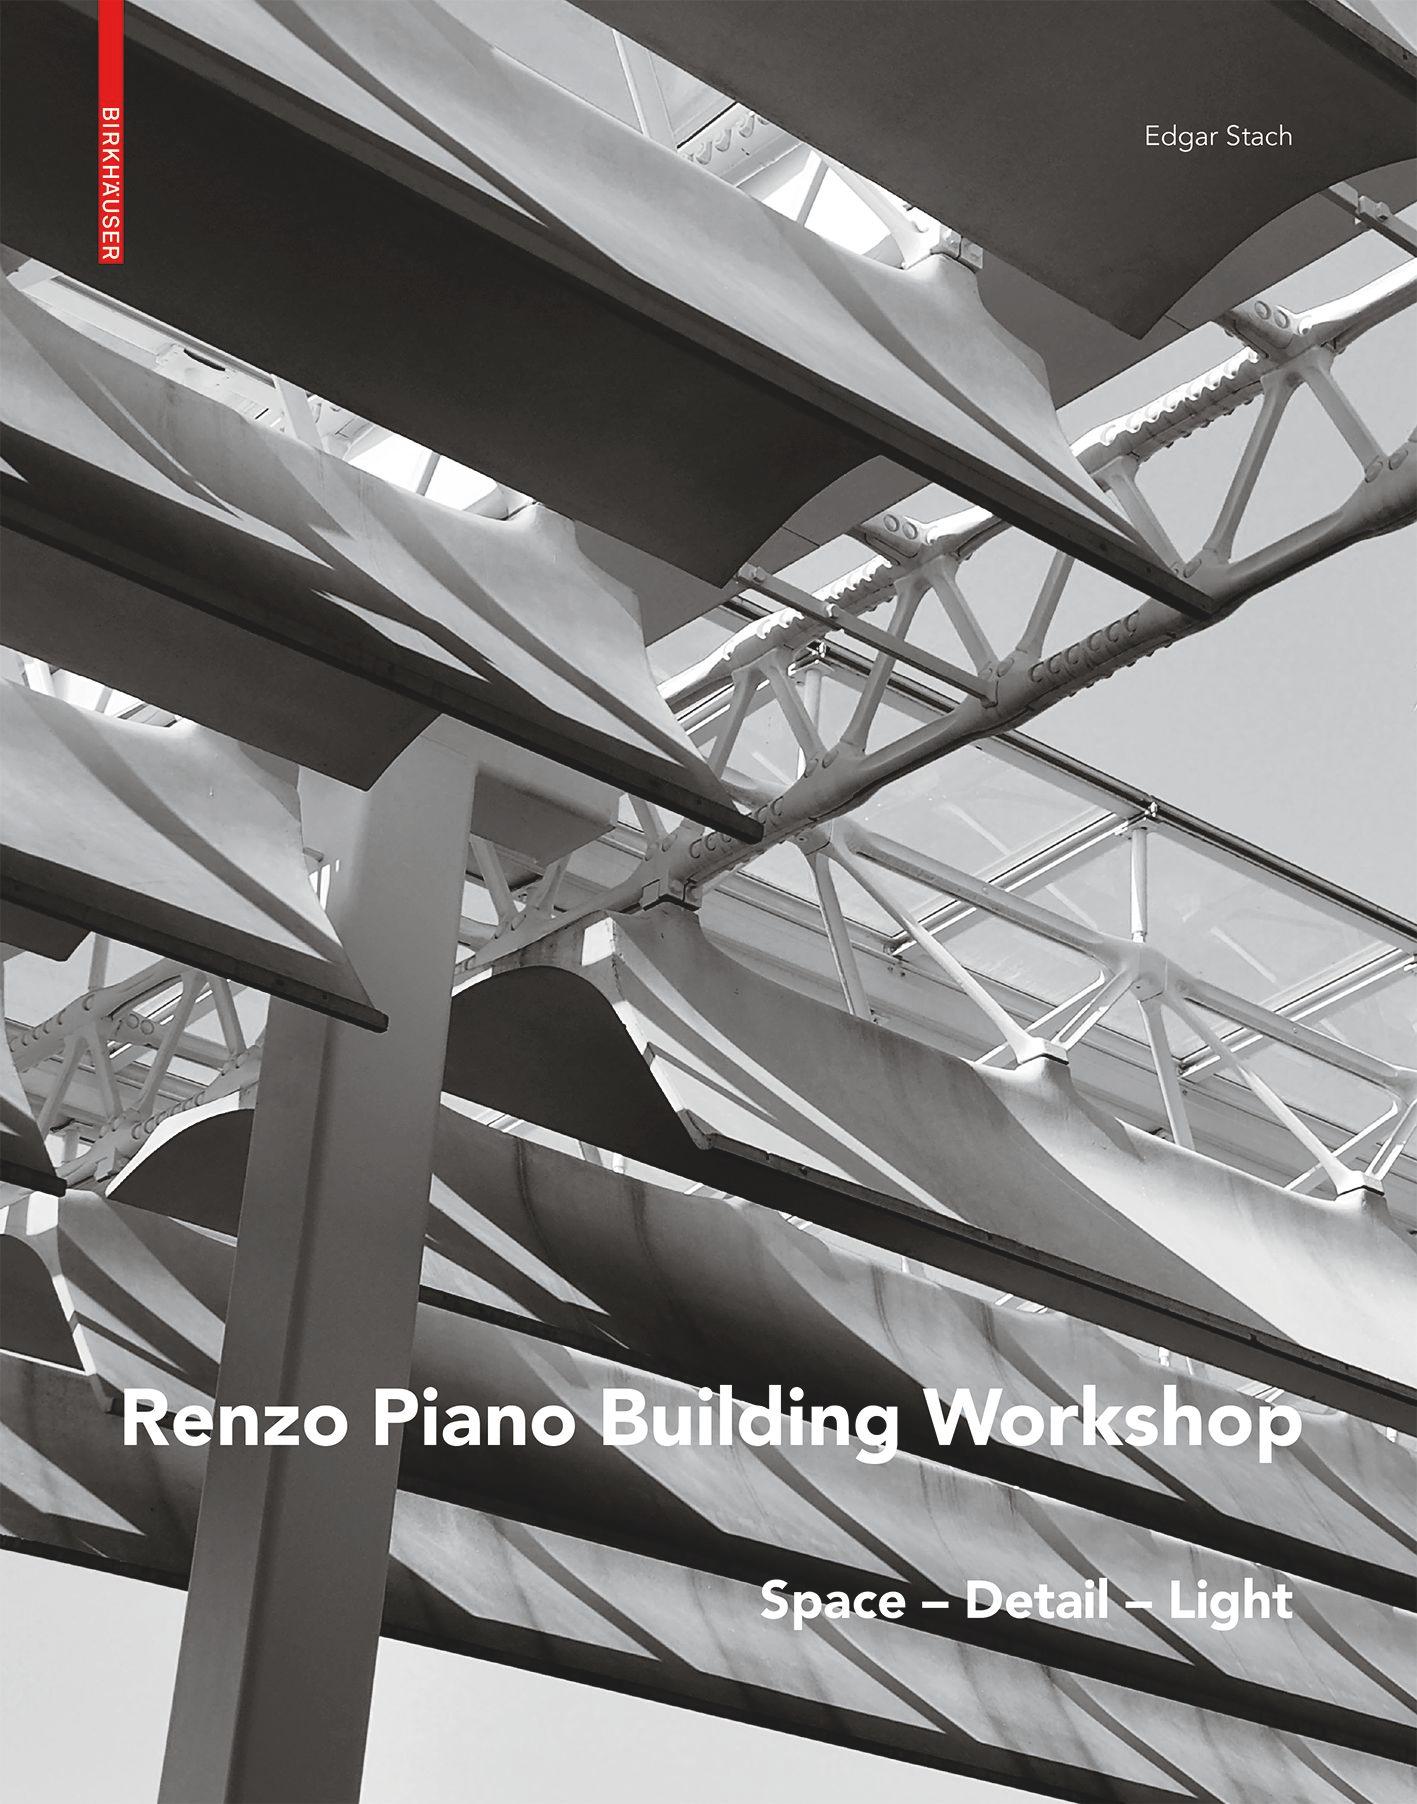 Renzo Piano's cover